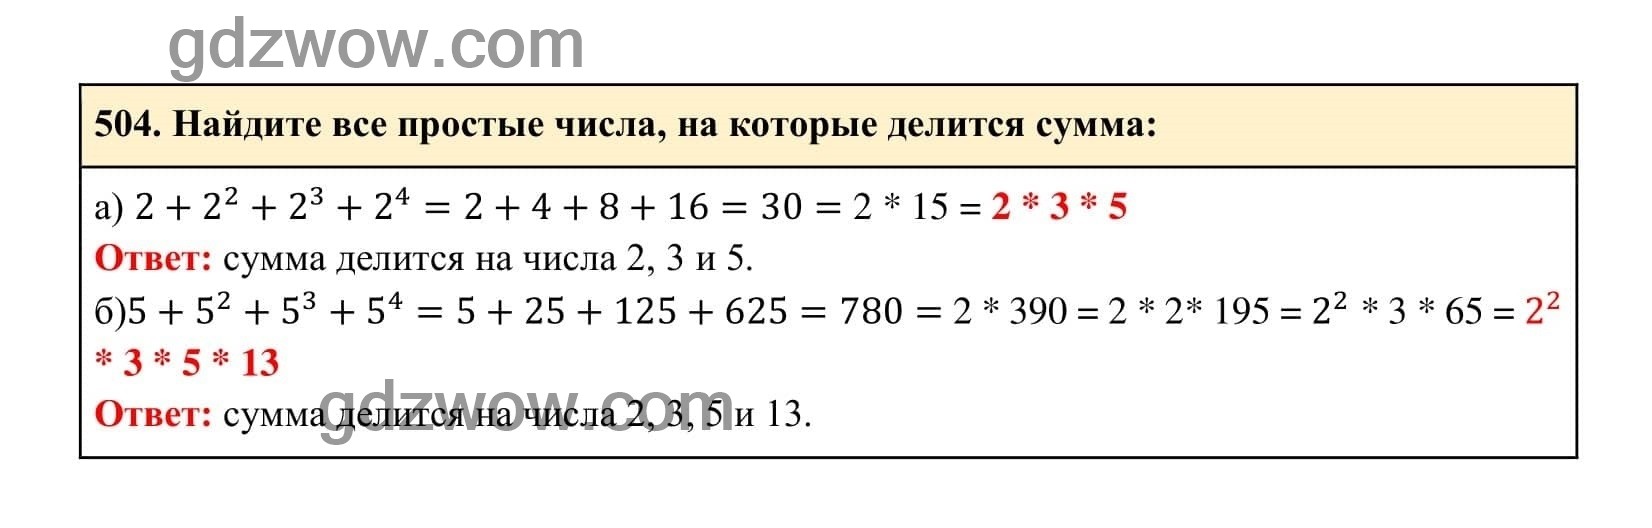 Упражнение 504 - ГДЗ по Алгебре 7 класс Учебник Макарычев (решебник) - GDZwow